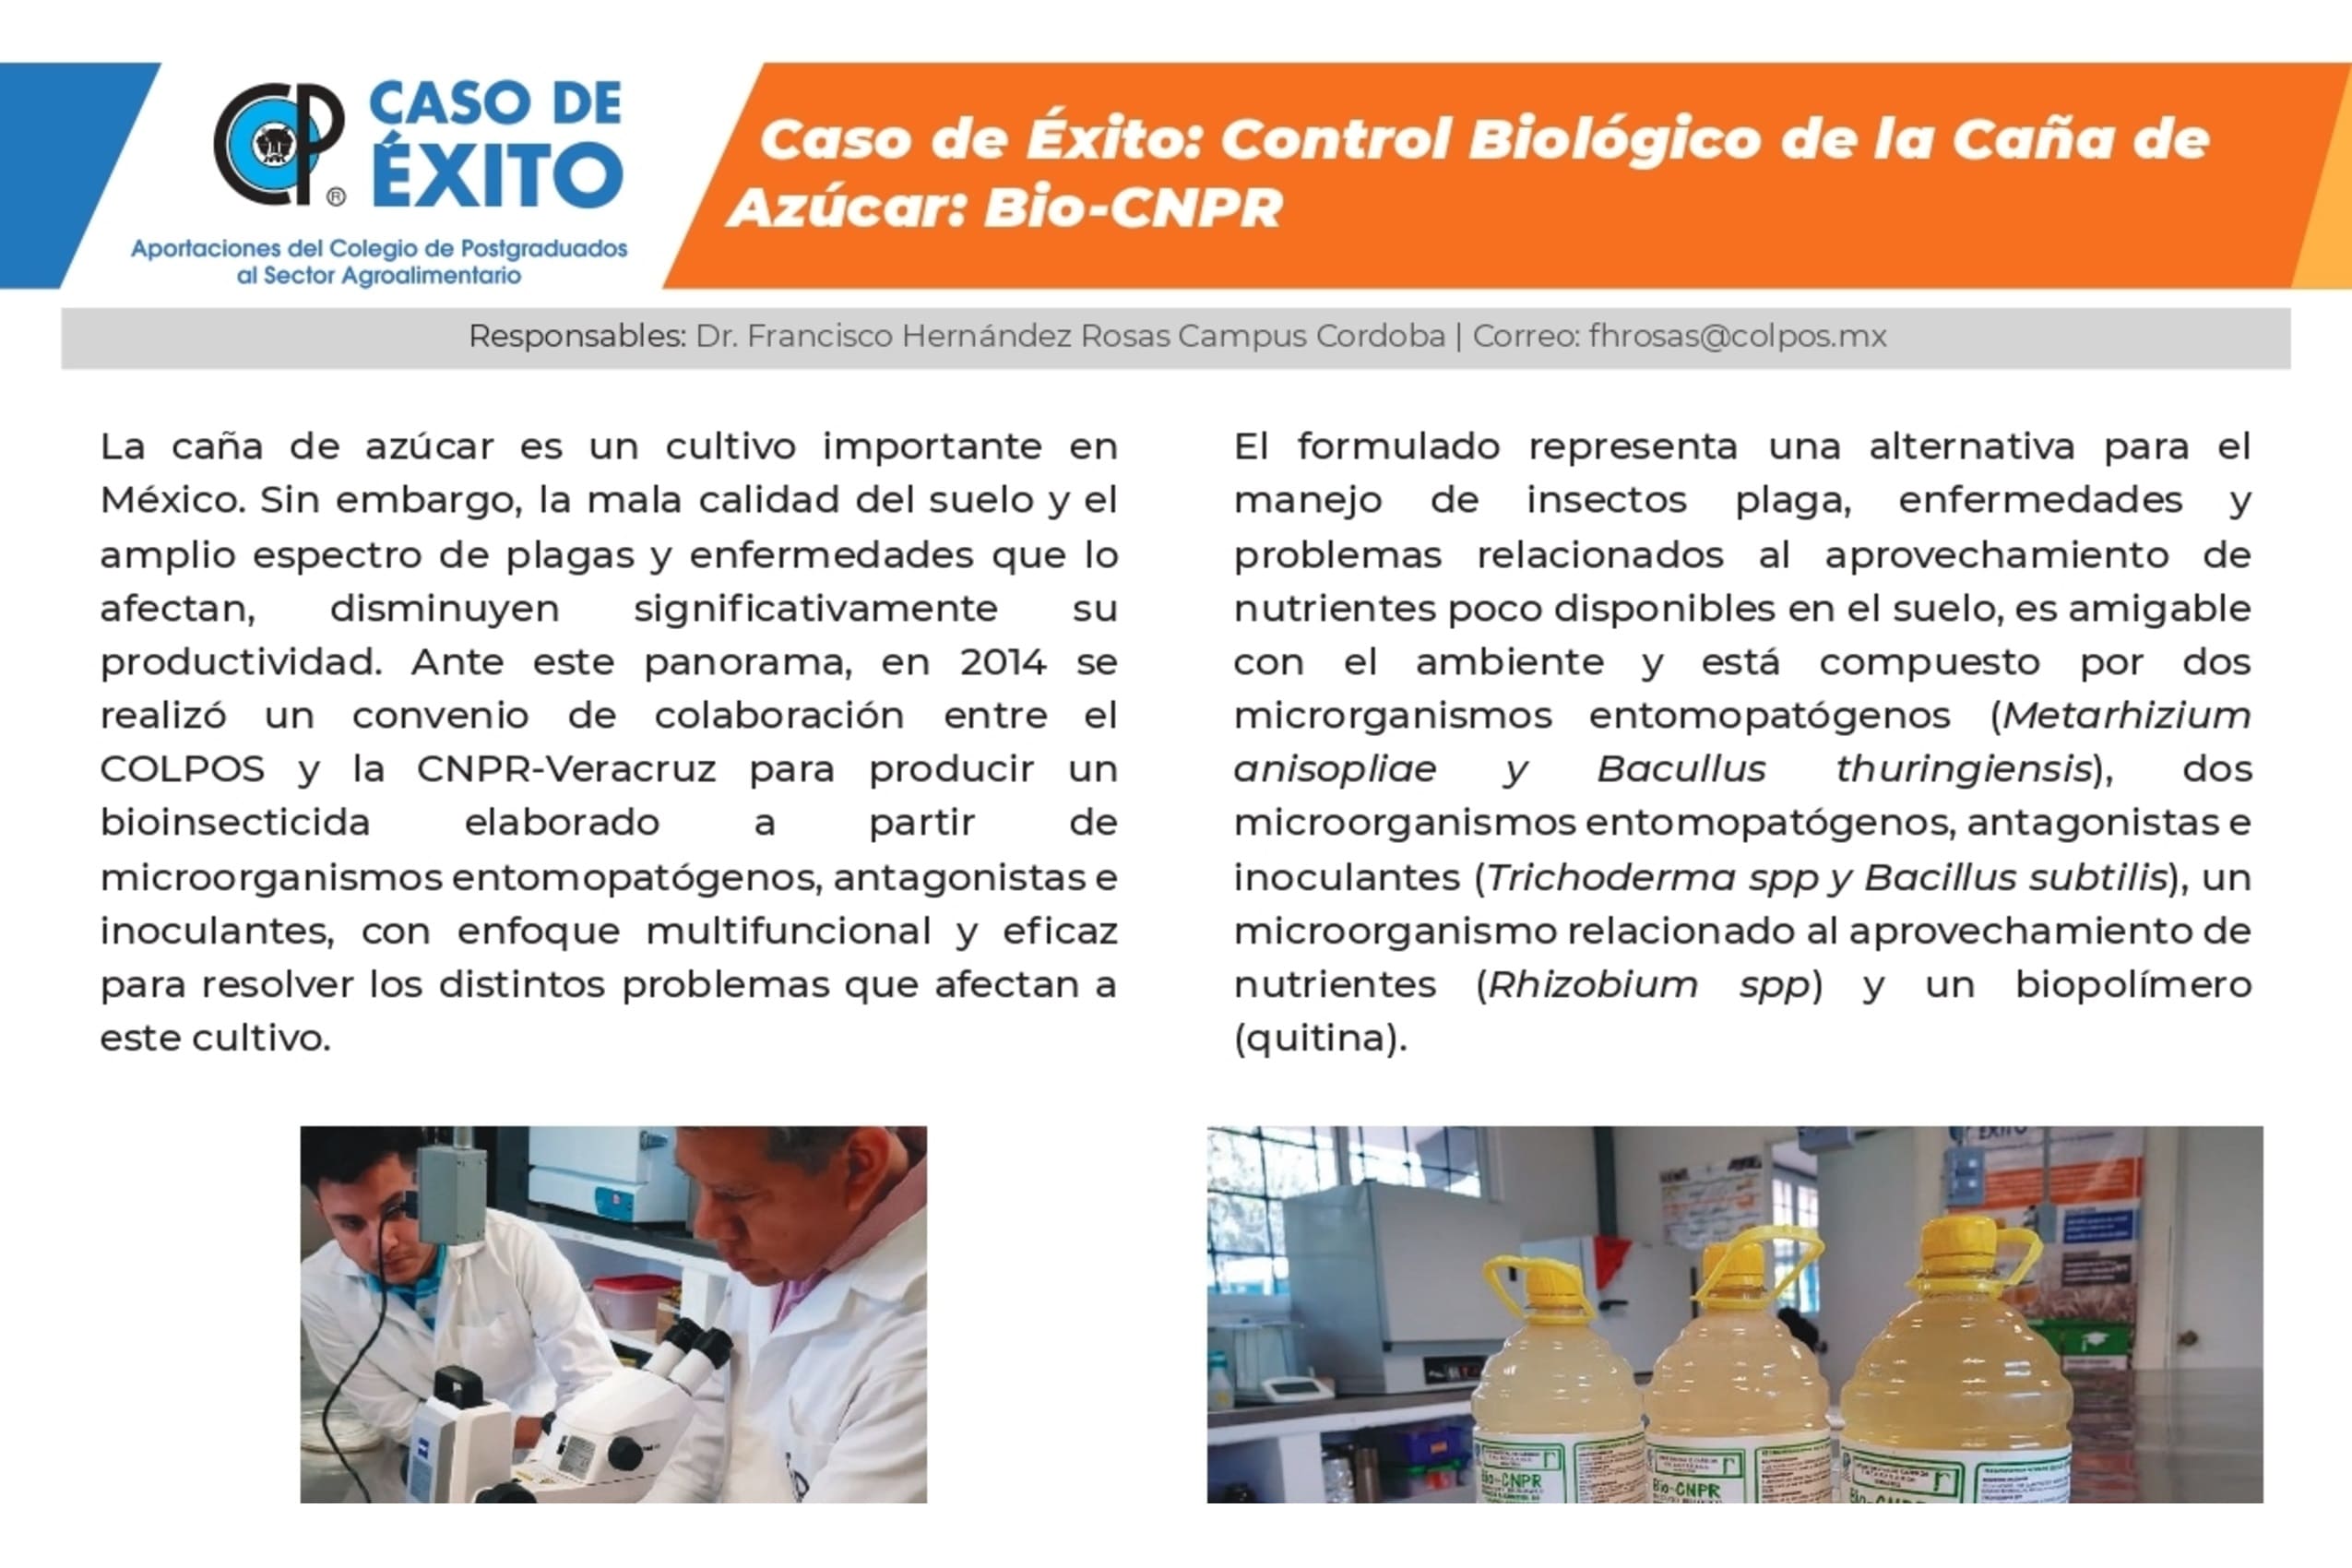 Control Biológico de la Caña de Azúcar: Bio-CNPR.